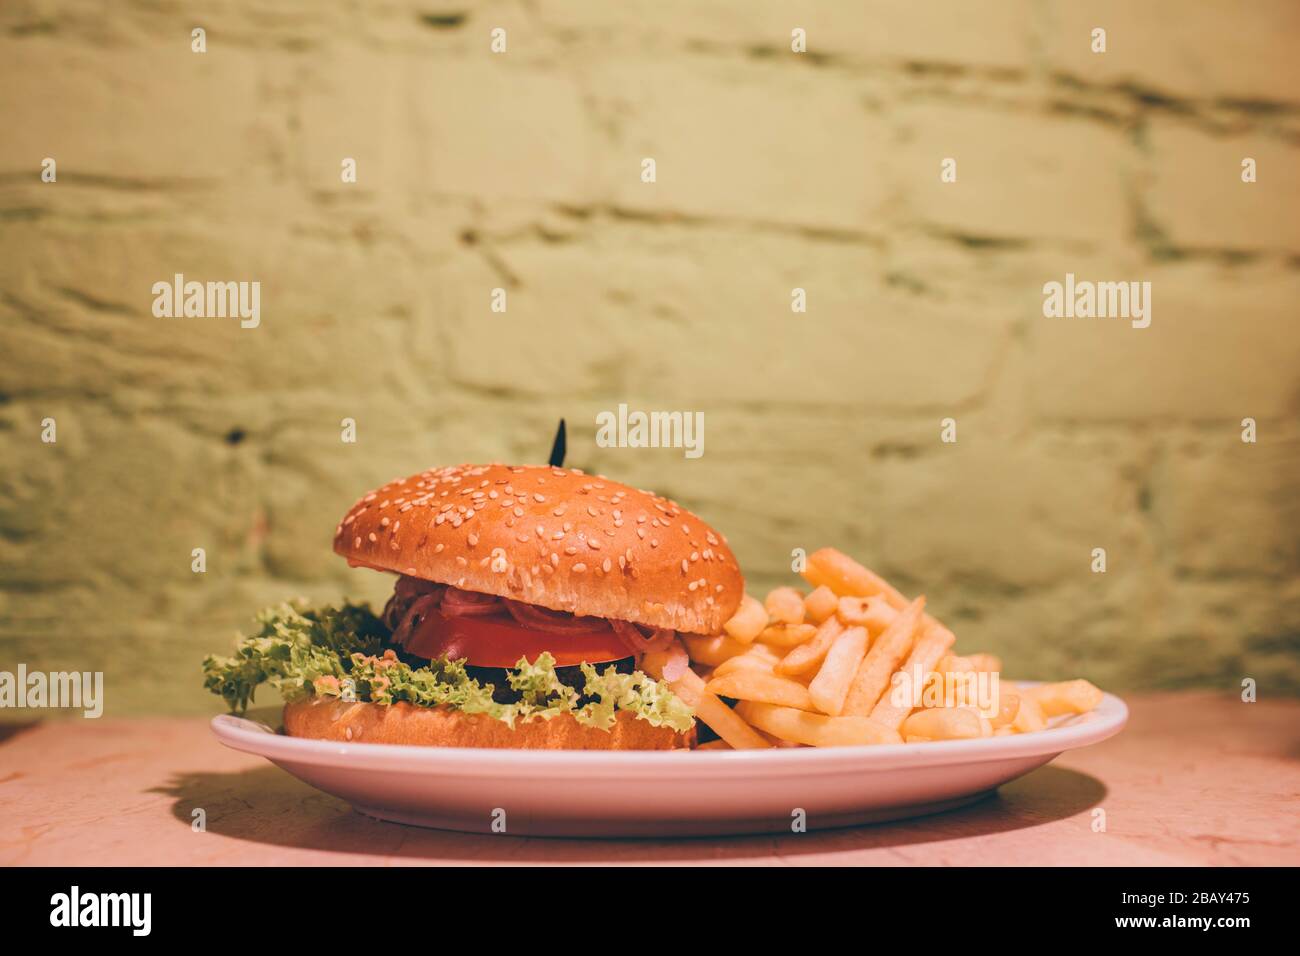 Lecker lecker fetter Burger mit Salat, Tomate und Treffen im Inneren. Auf Platte mit pommes frites liegen. Bild von Fächermahlzeit aus fast Food Stockfoto